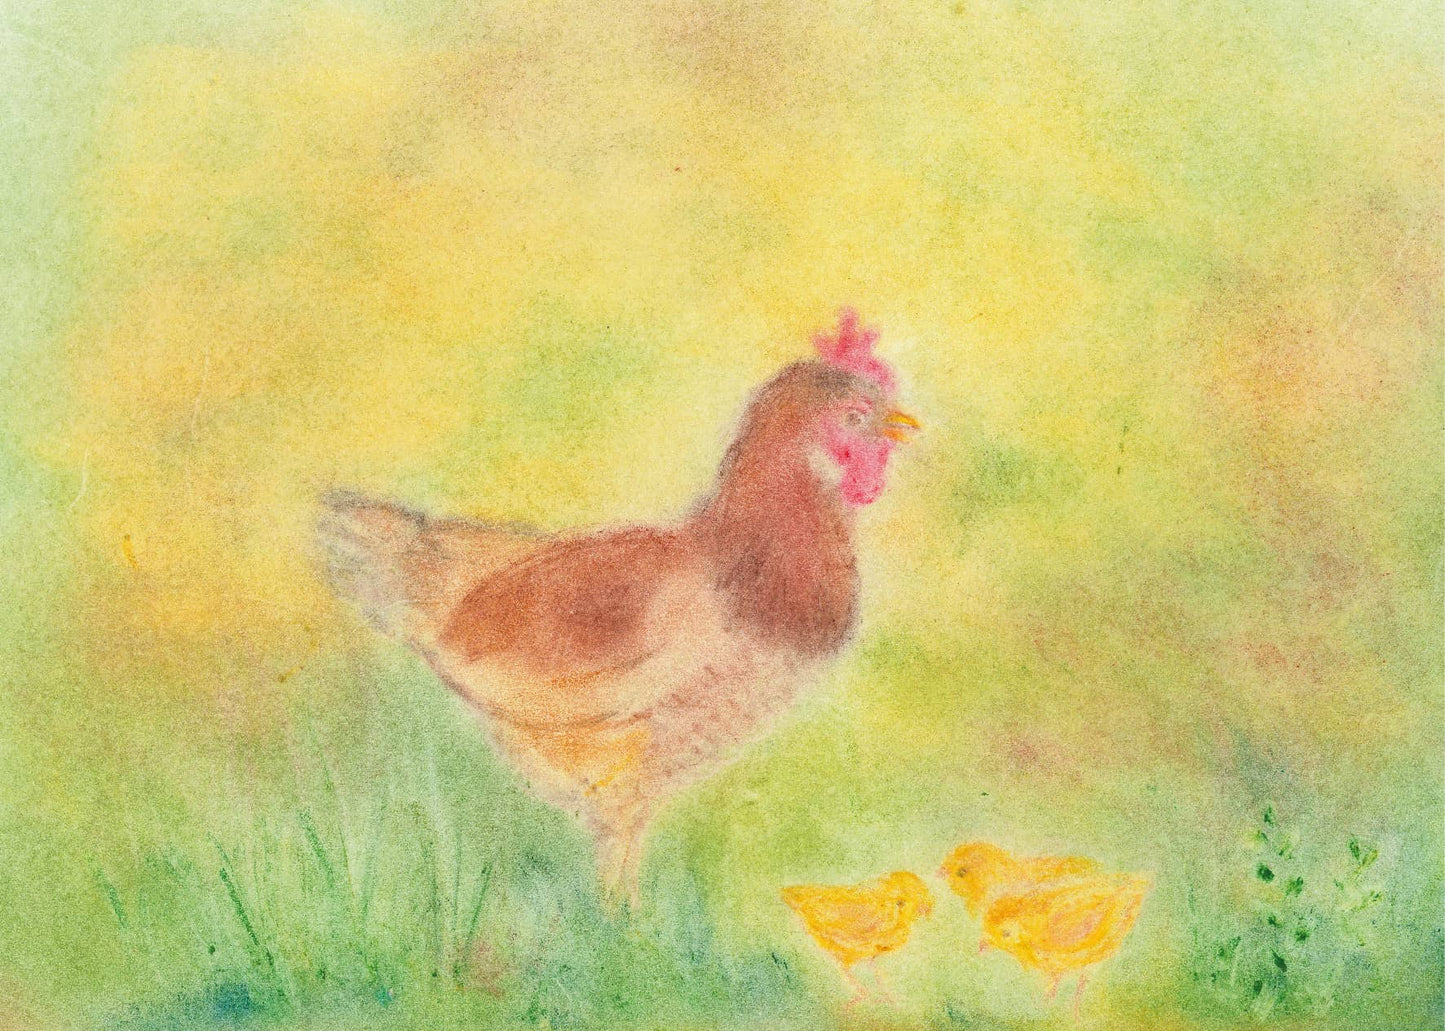 Seccorell-Postkarte "Huhn mit Küken" zeigt fürsorgliche Henne mit ihren Küken auf einer sonnigen Wiese.